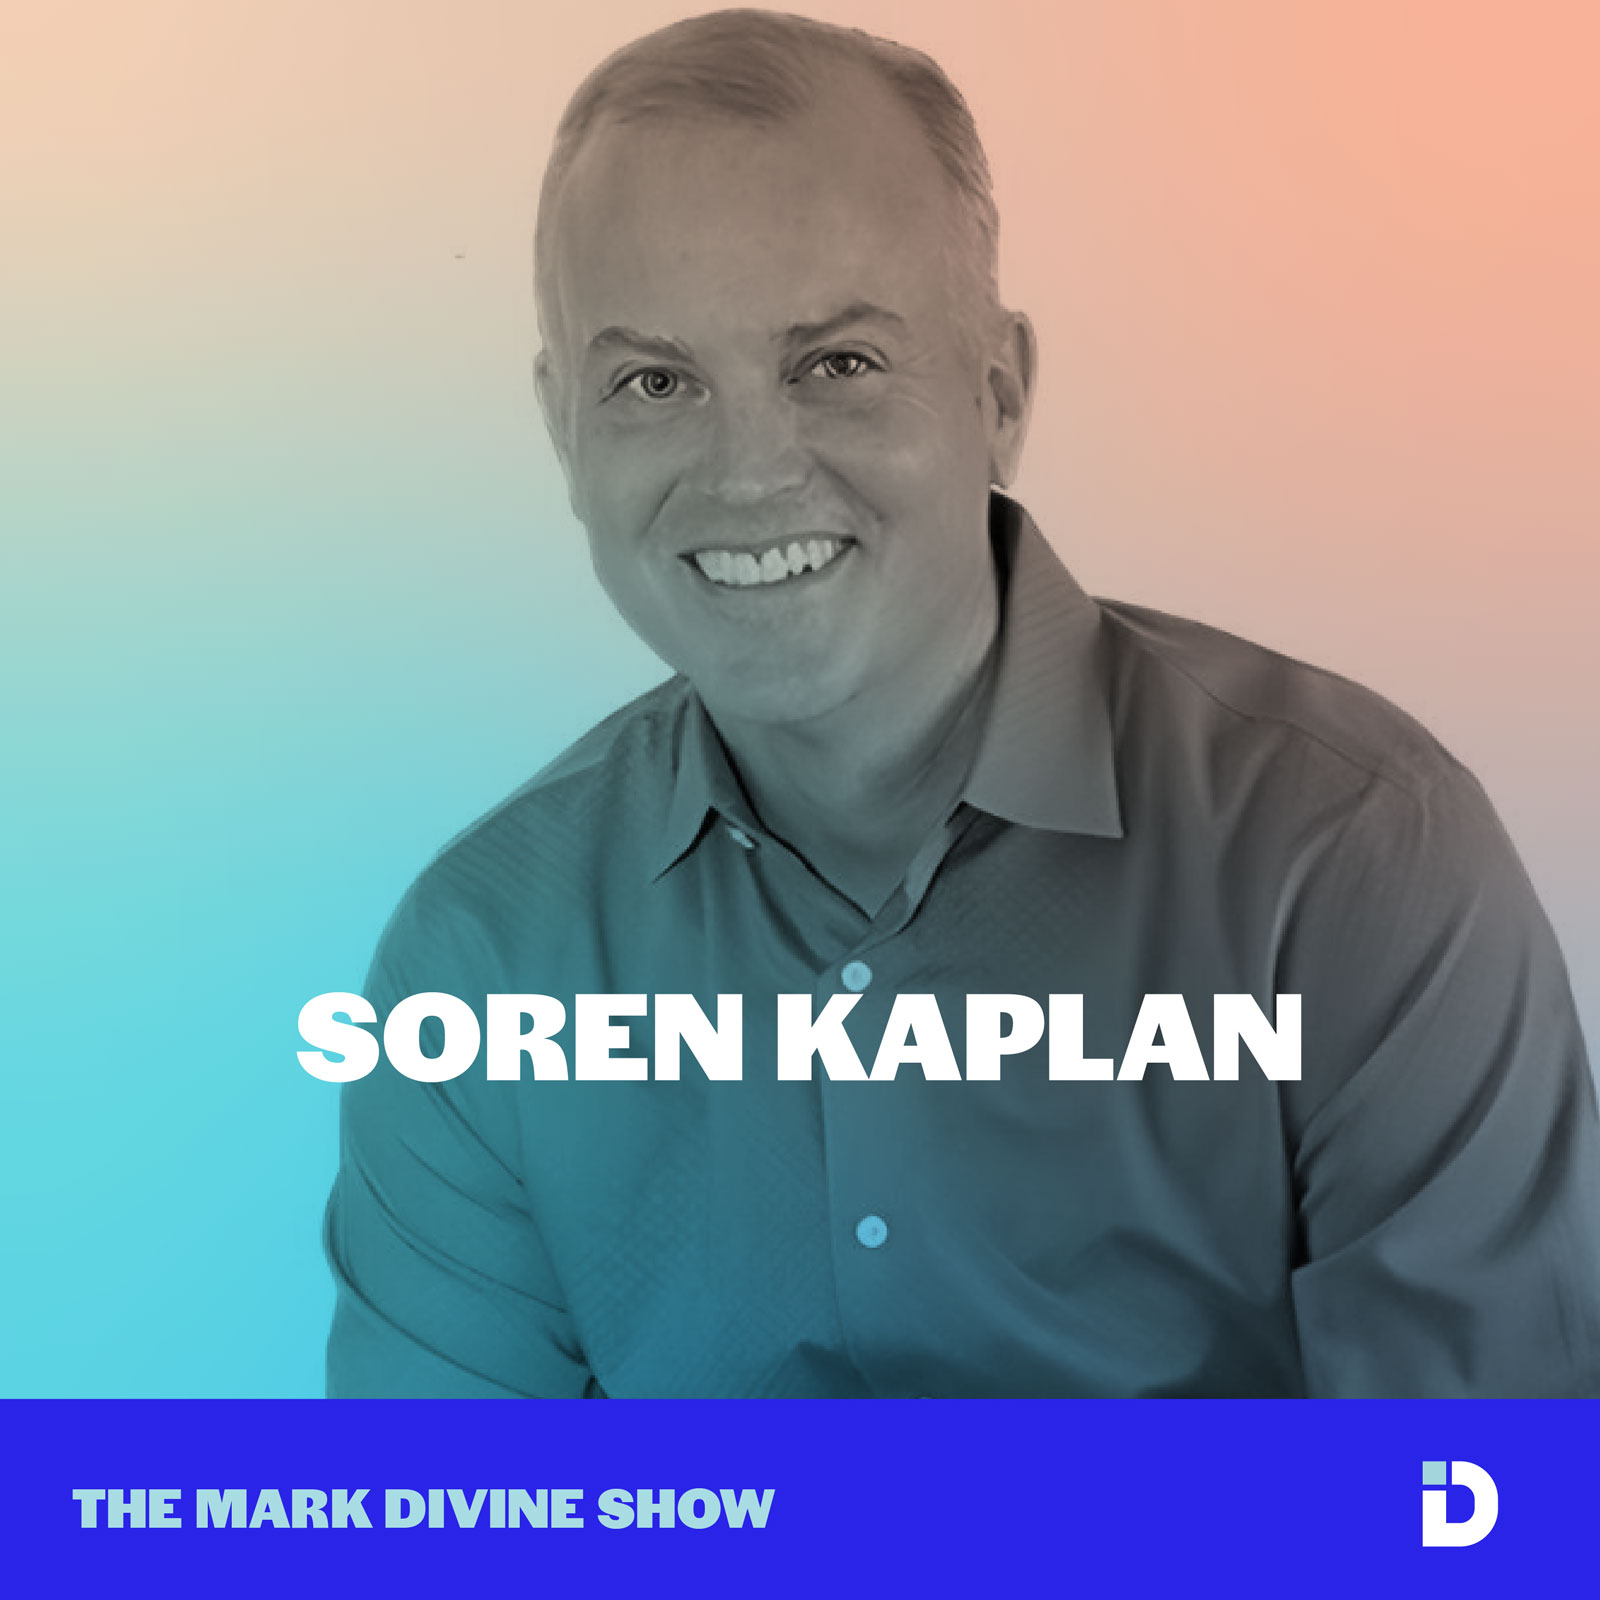 Soren Kaplan